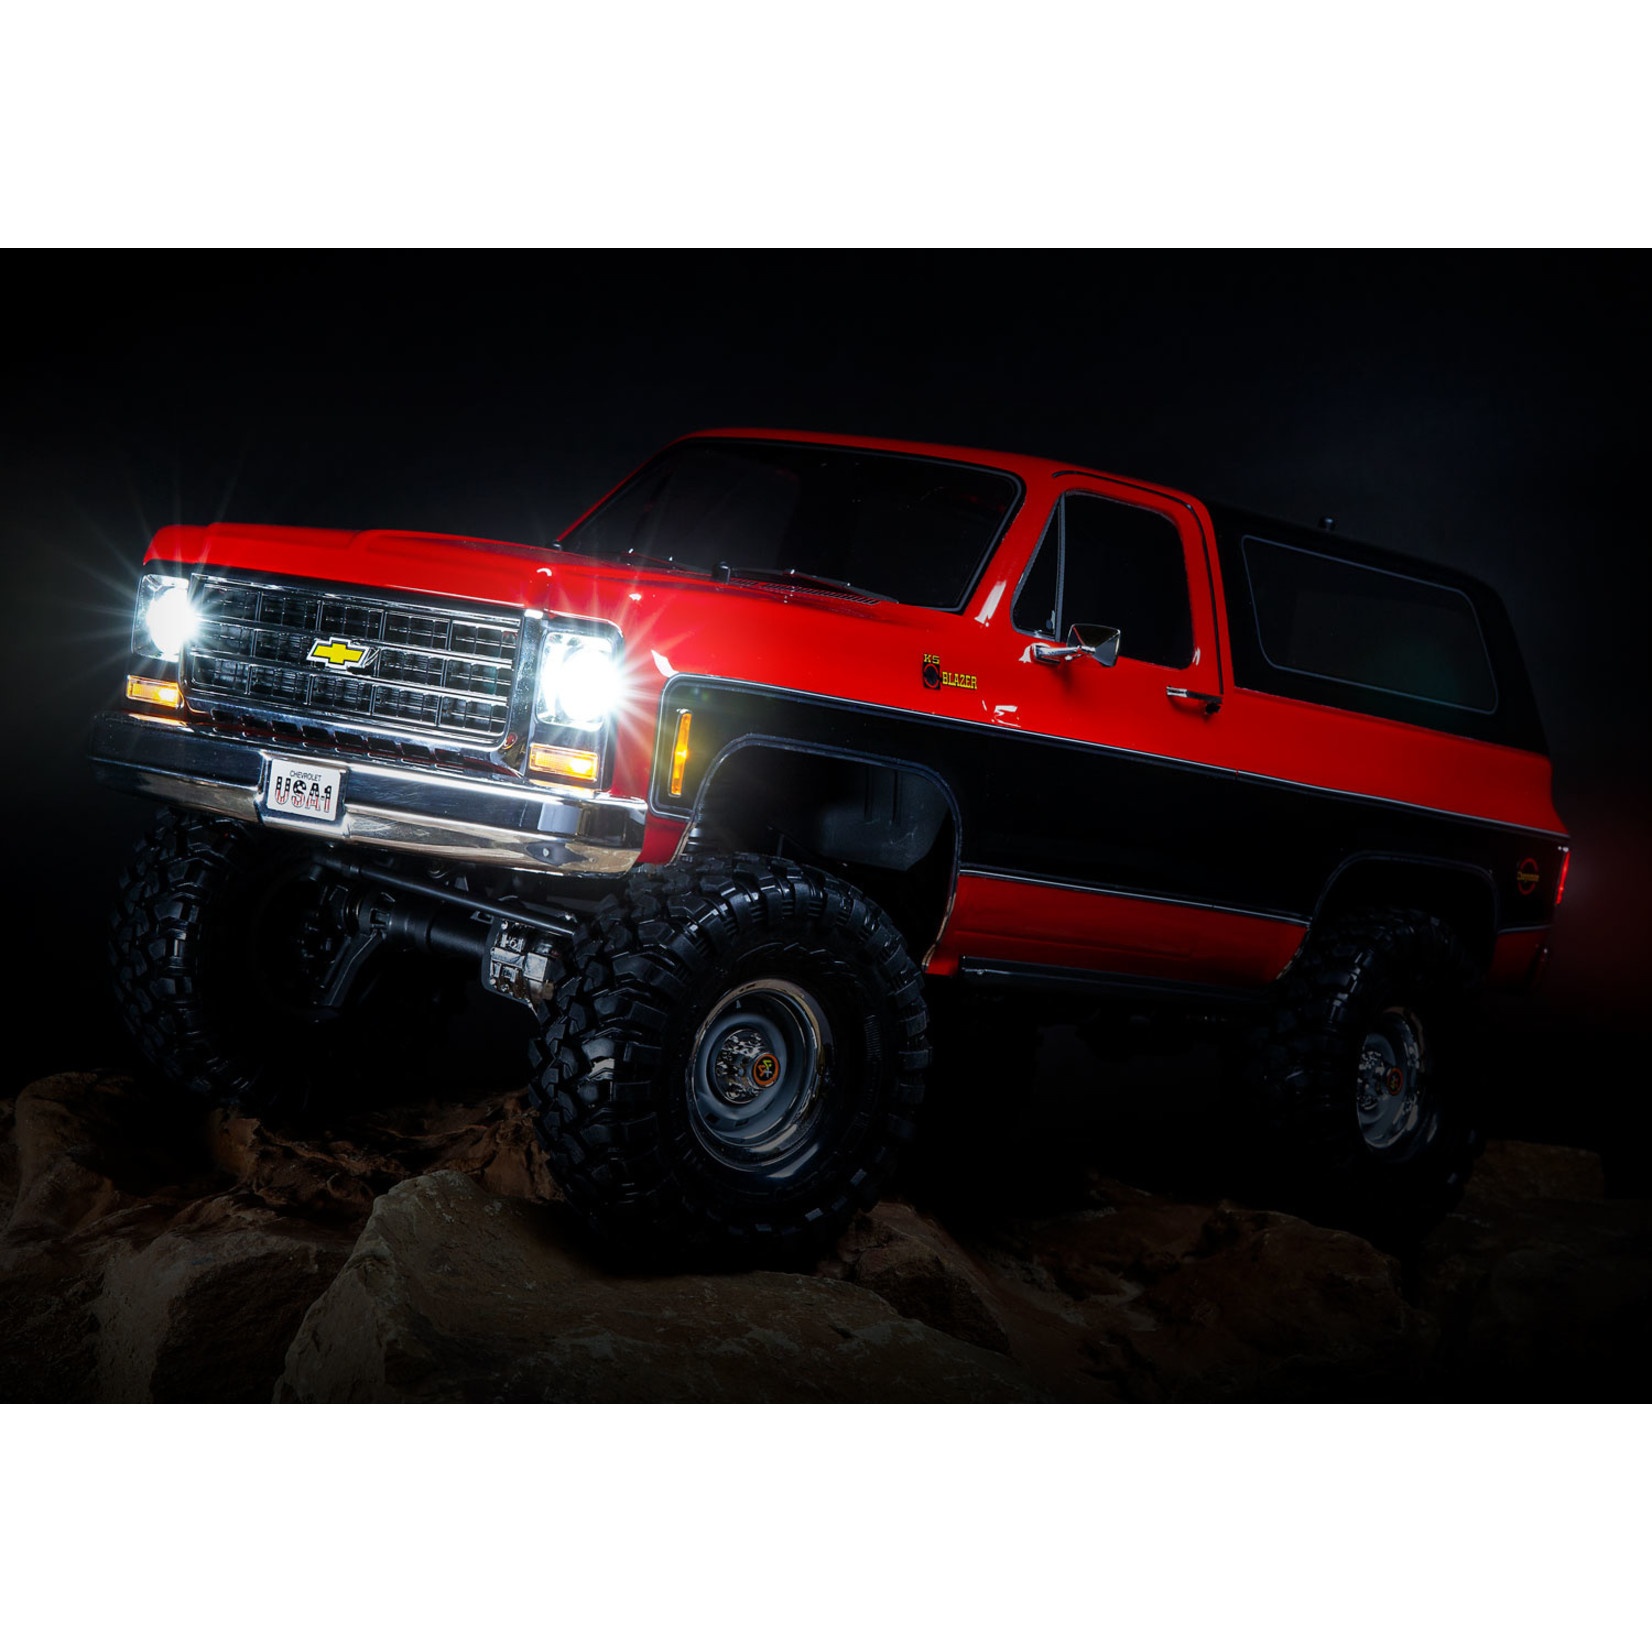 Traxxas Traxxas TRX-4 1/10 Trail Crawler Truck w/'79 Chevrolet K5 Blazer Body (Red) w/TQi 2.4GHz Radio #82076-4-RED